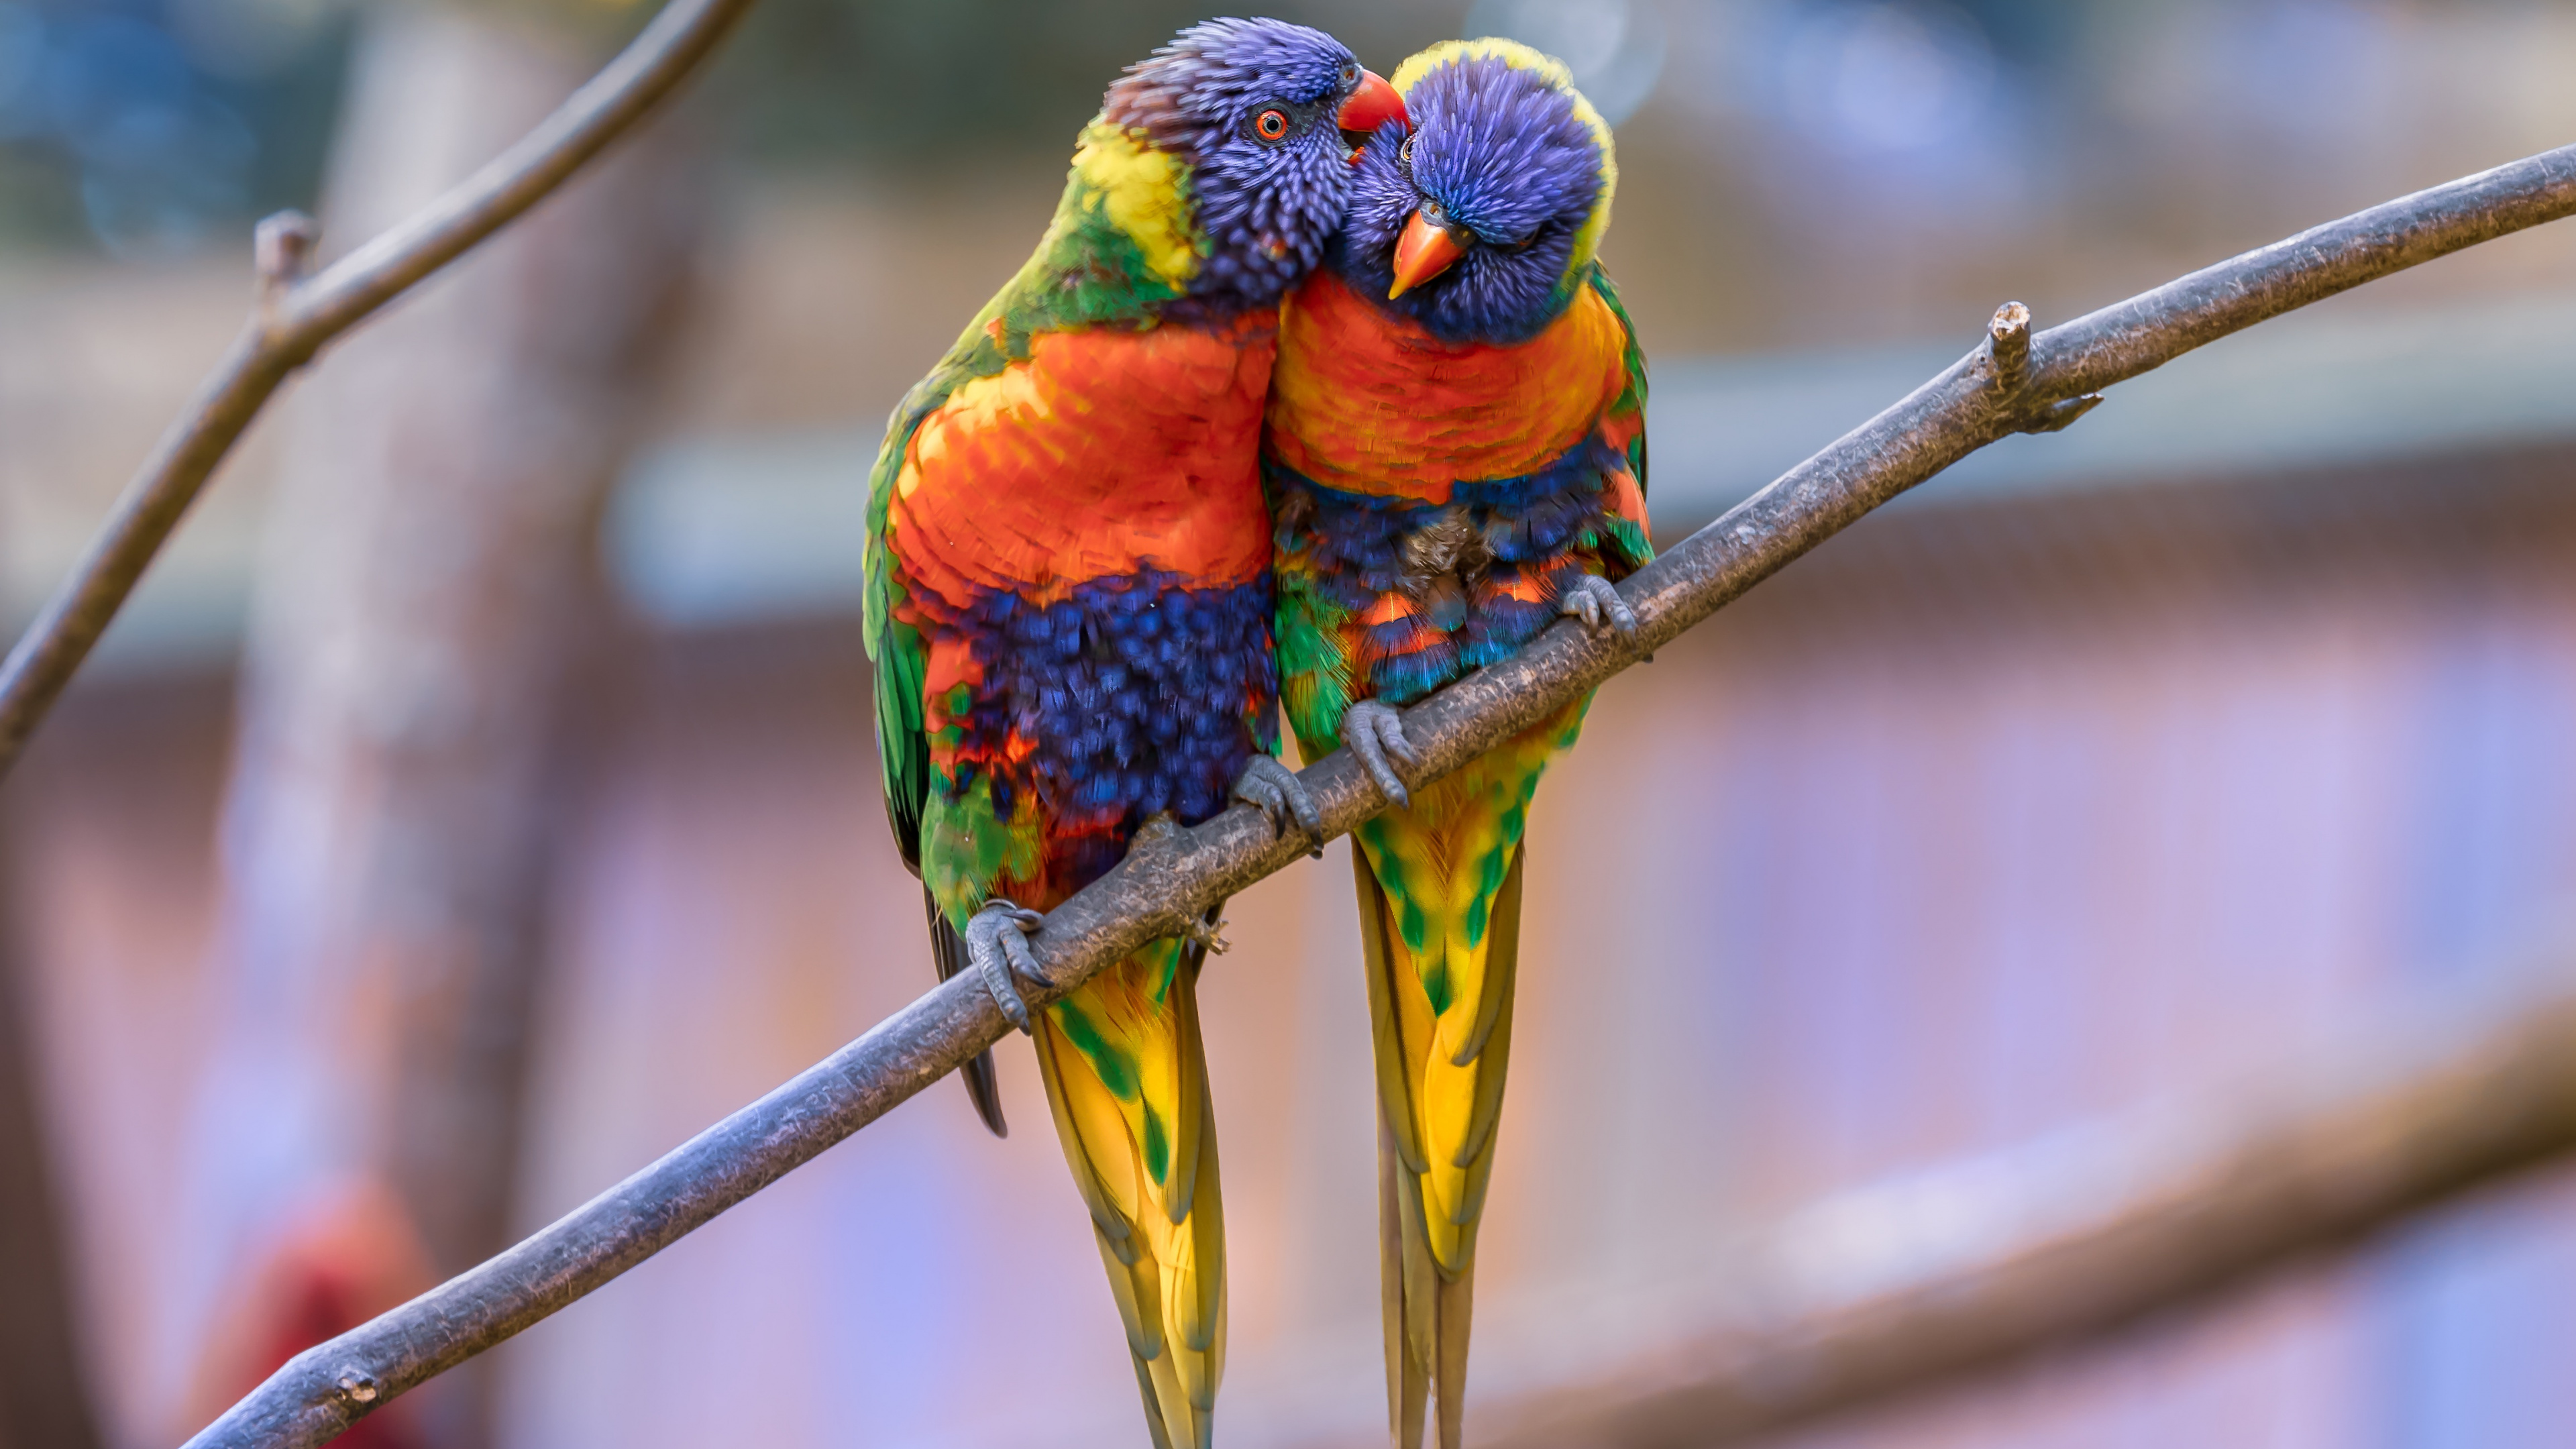 彩虹澳洲鹦鹉, 金刚鹦鹉, 鸟, 澳洲鹦鹉, 鹦鹉 壁纸 3840x2160 允许